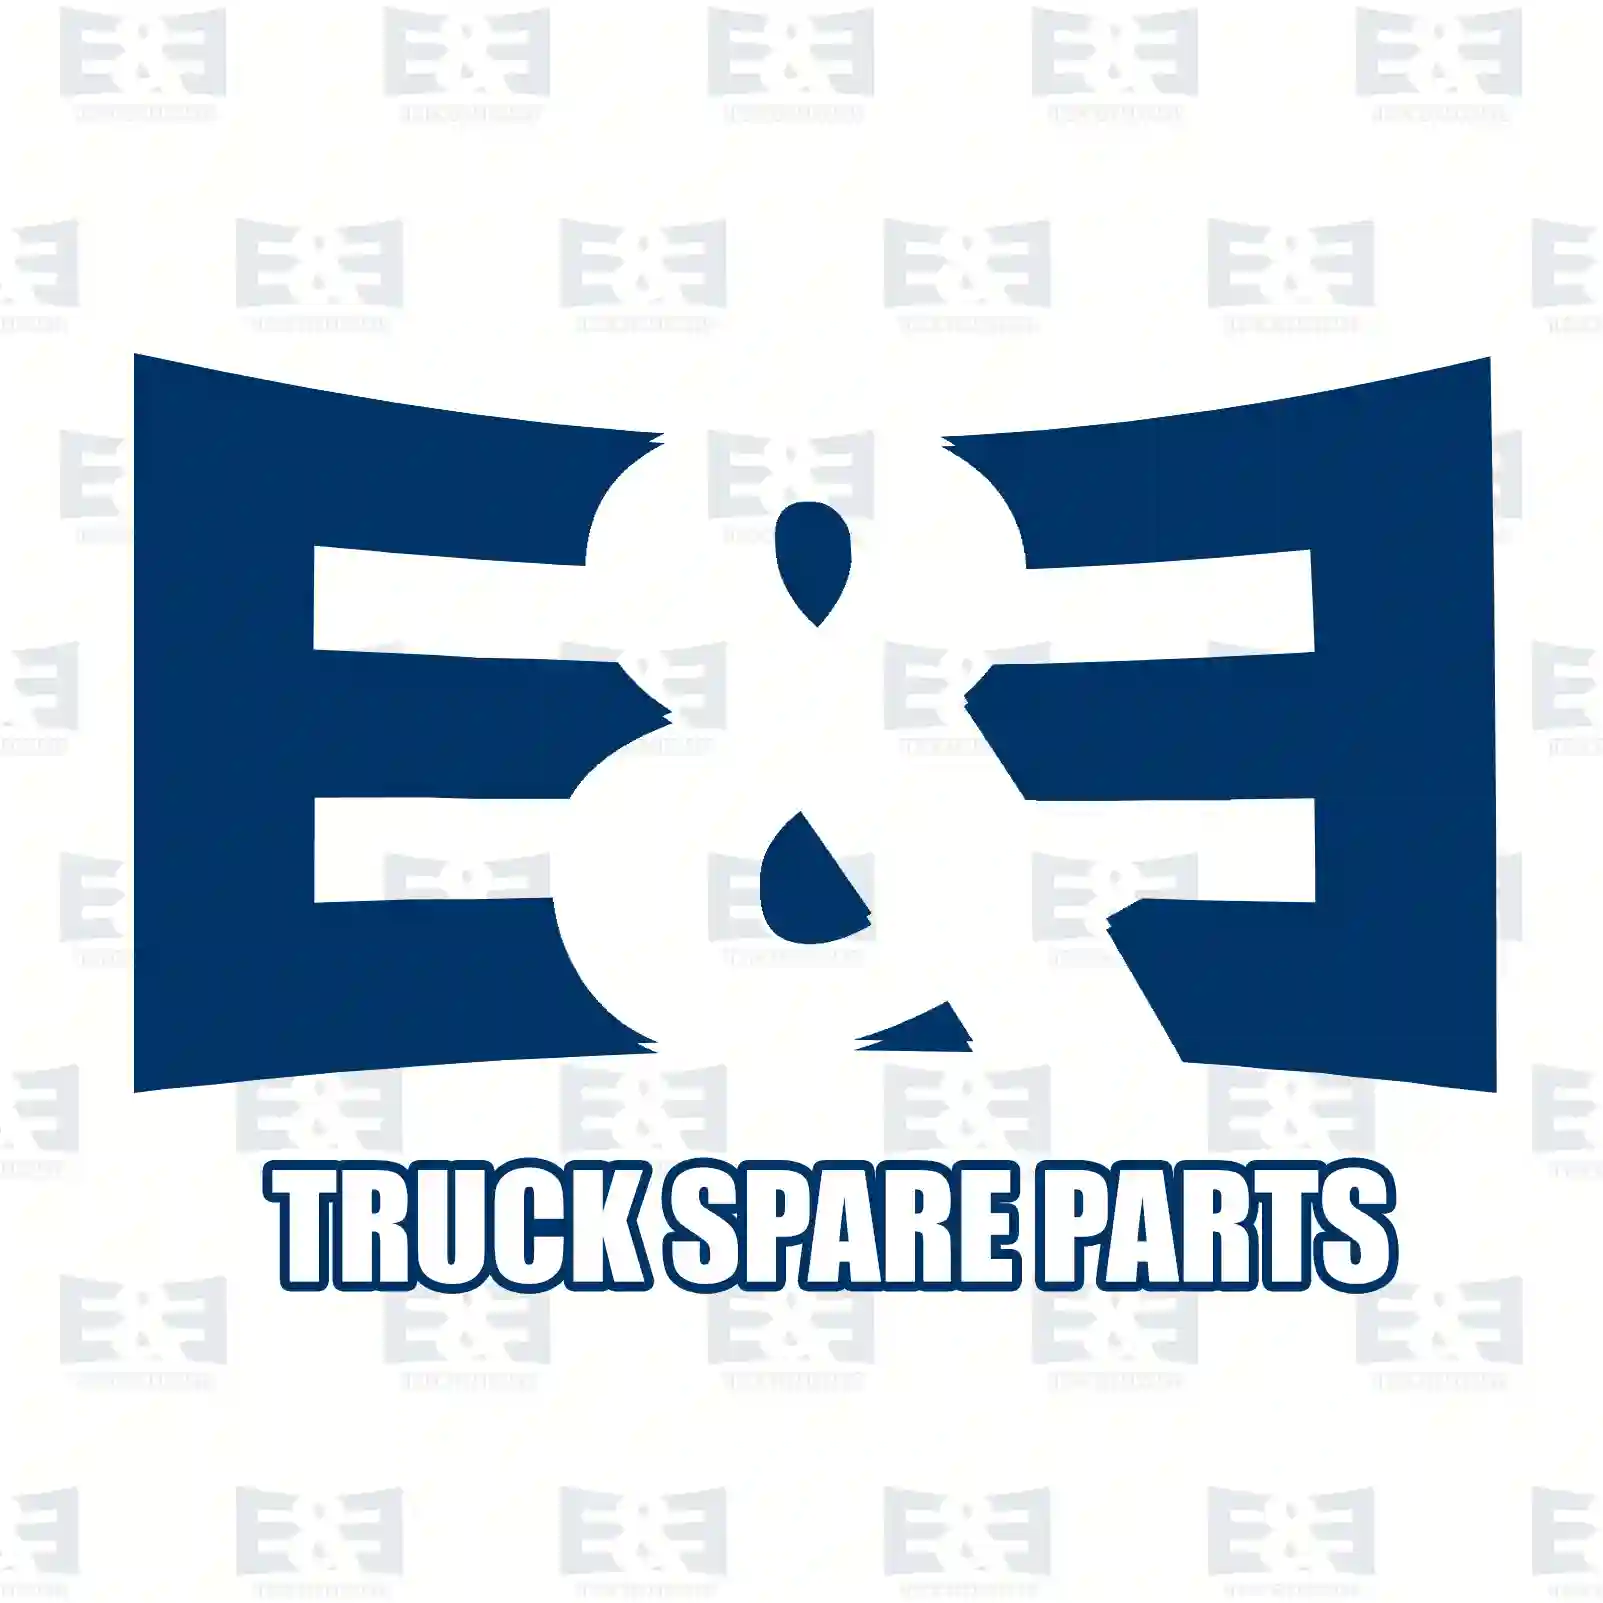 O-ring, 2E2285287, 1795777, 1949331, ZG02865-0008 ||  2E2285287 E&E Truck Spare Parts | Truck Spare Parts, Auotomotive Spare Parts O-ring, 2E2285287, 1795777, 1949331, ZG02865-0008 ||  2E2285287 E&E Truck Spare Parts | Truck Spare Parts, Auotomotive Spare Parts